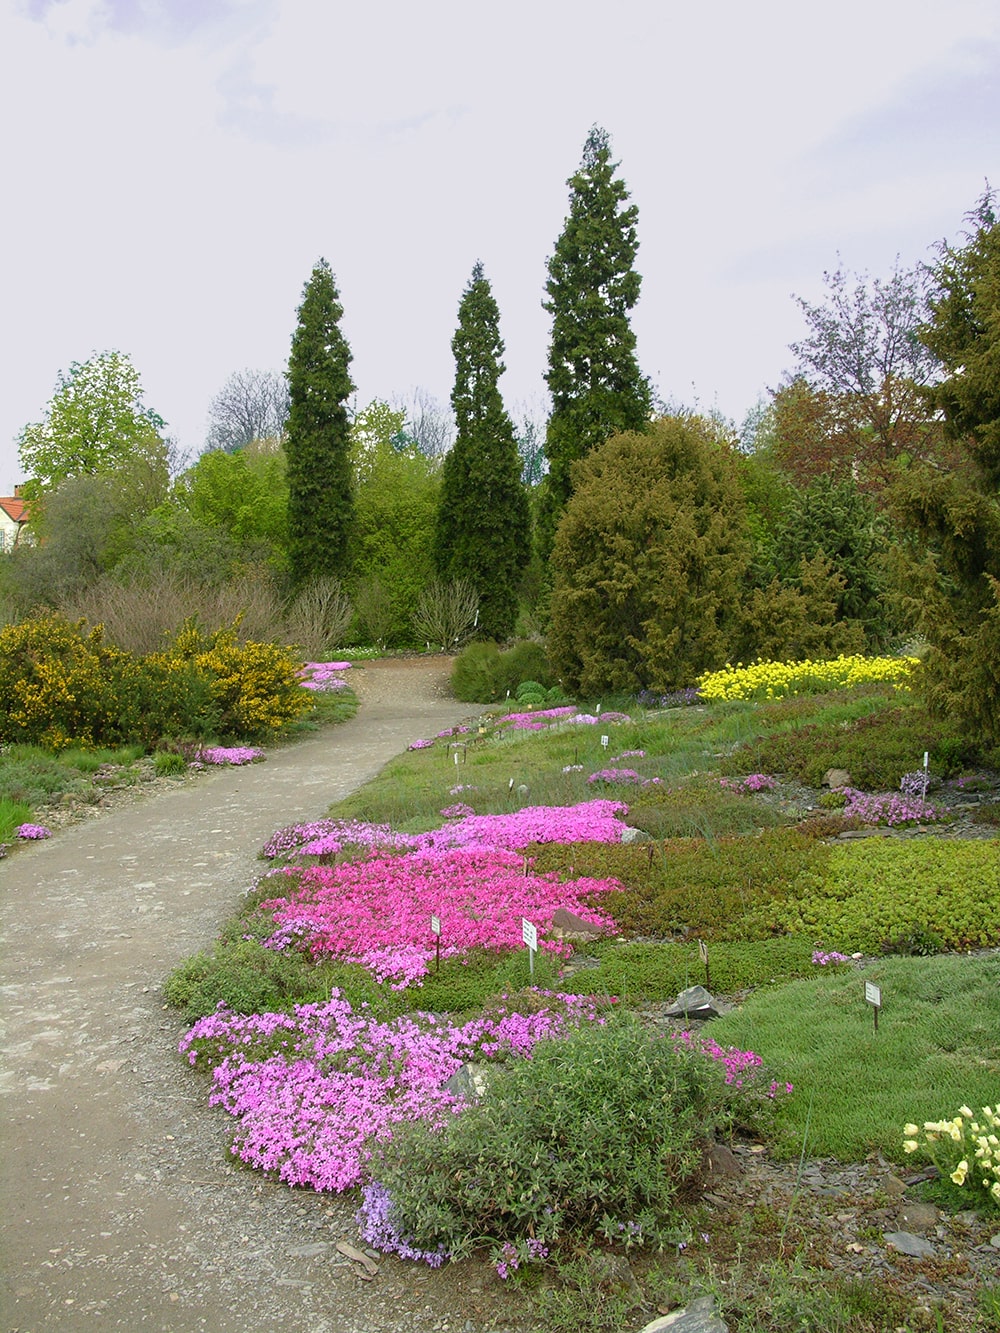 Ботанический сад в Трое, изображение ландшафта.